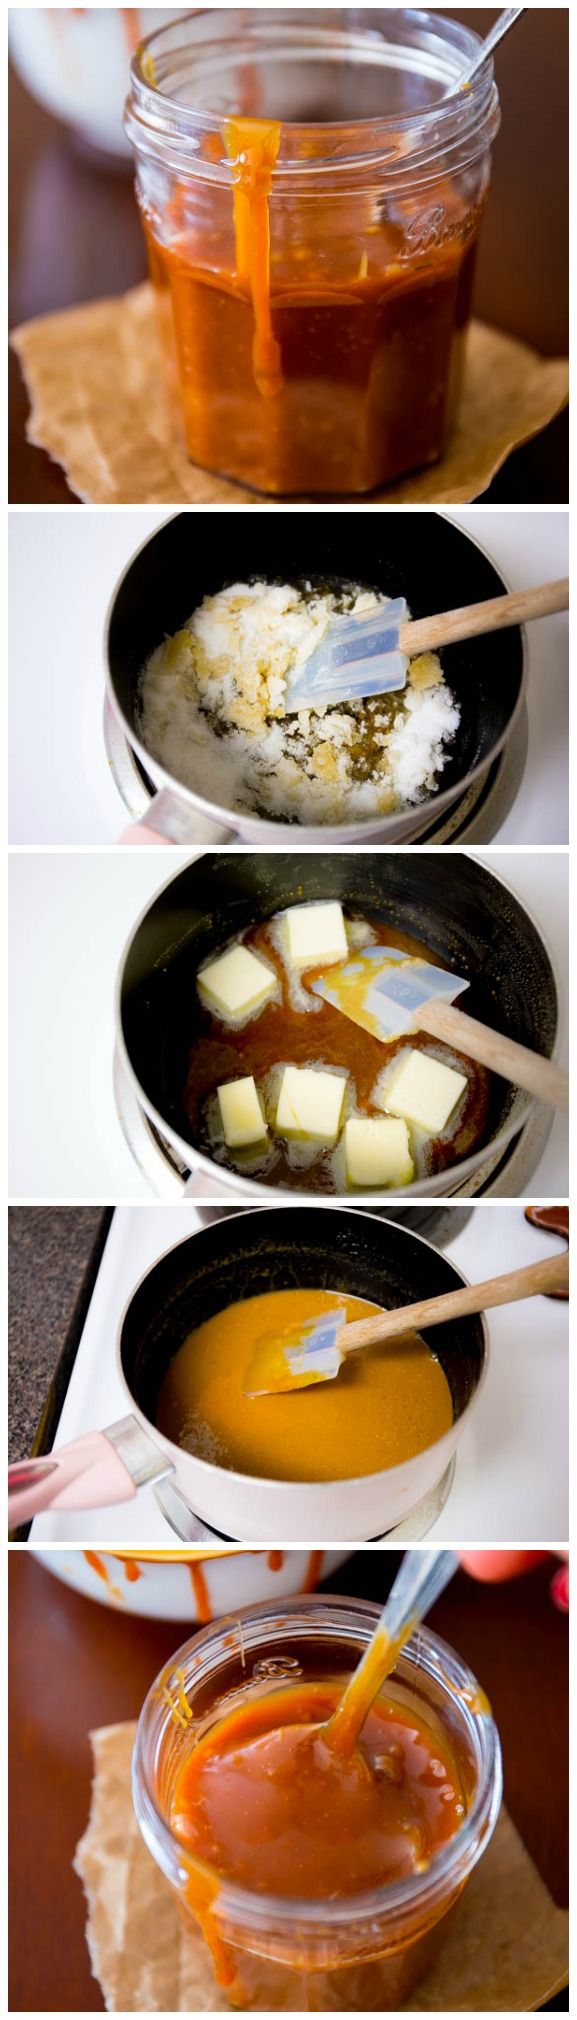 10 minutes de sauce au caramel salé - ce truc est le MEILLEUR que j'ai essayé et c'est si simple à faire en utilisant des ingrédients faciles.